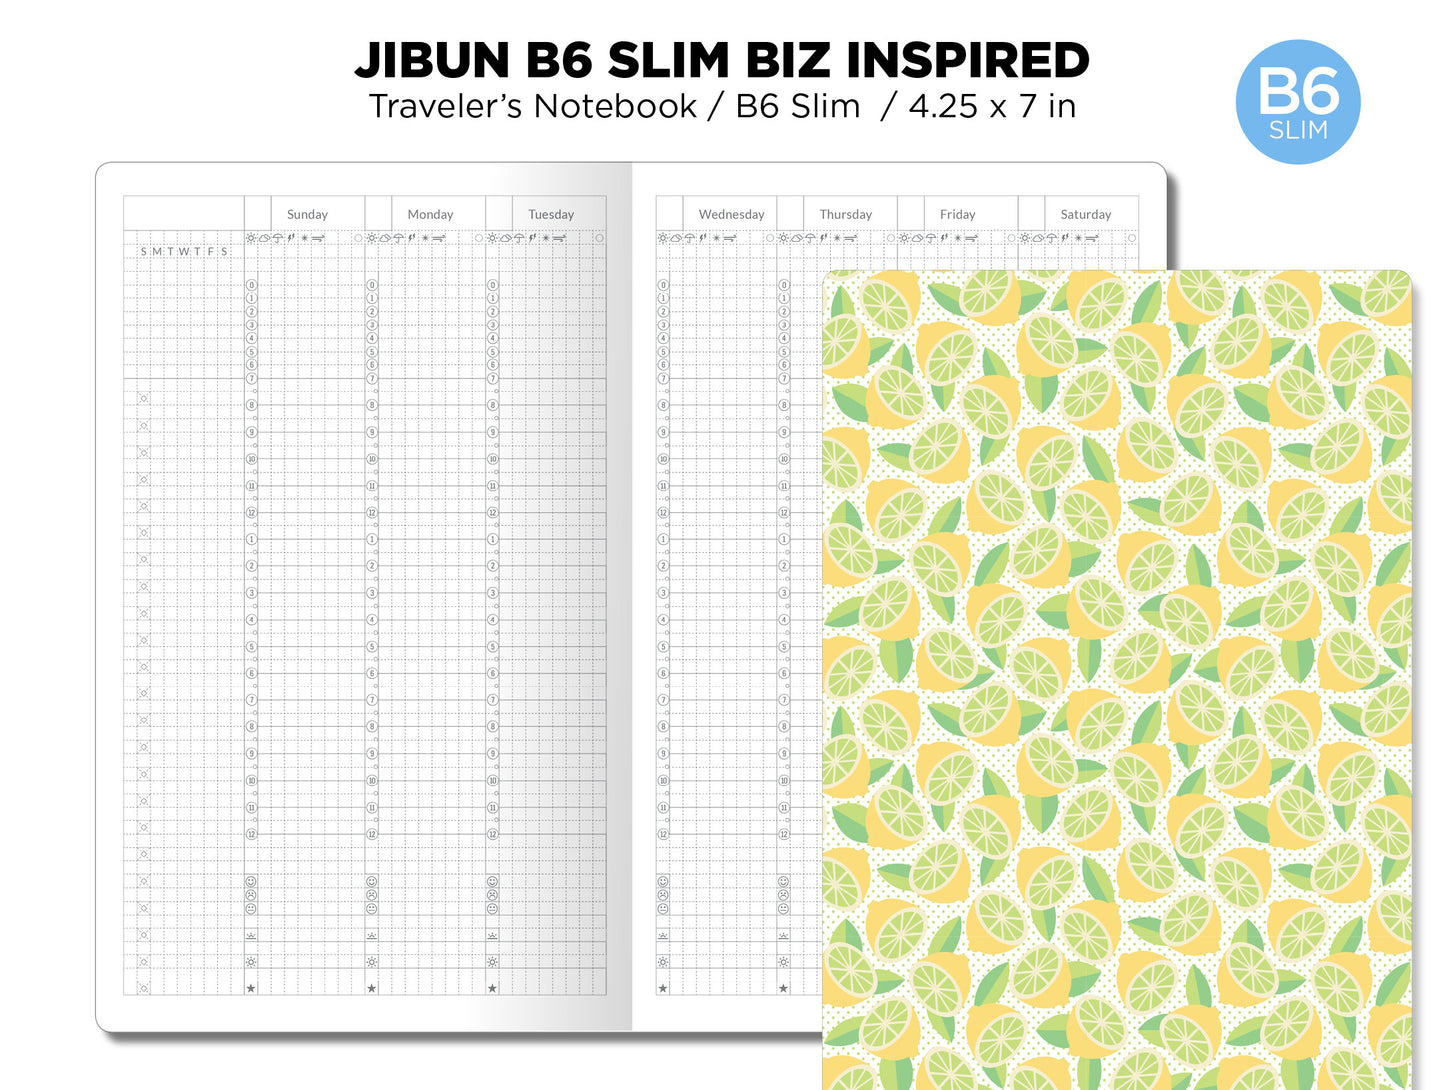 B6 Slim JIBUN Biz Weekly GRID Traveler's Notebook Vertical Japanese Planner Inspired Functional Printable Insert